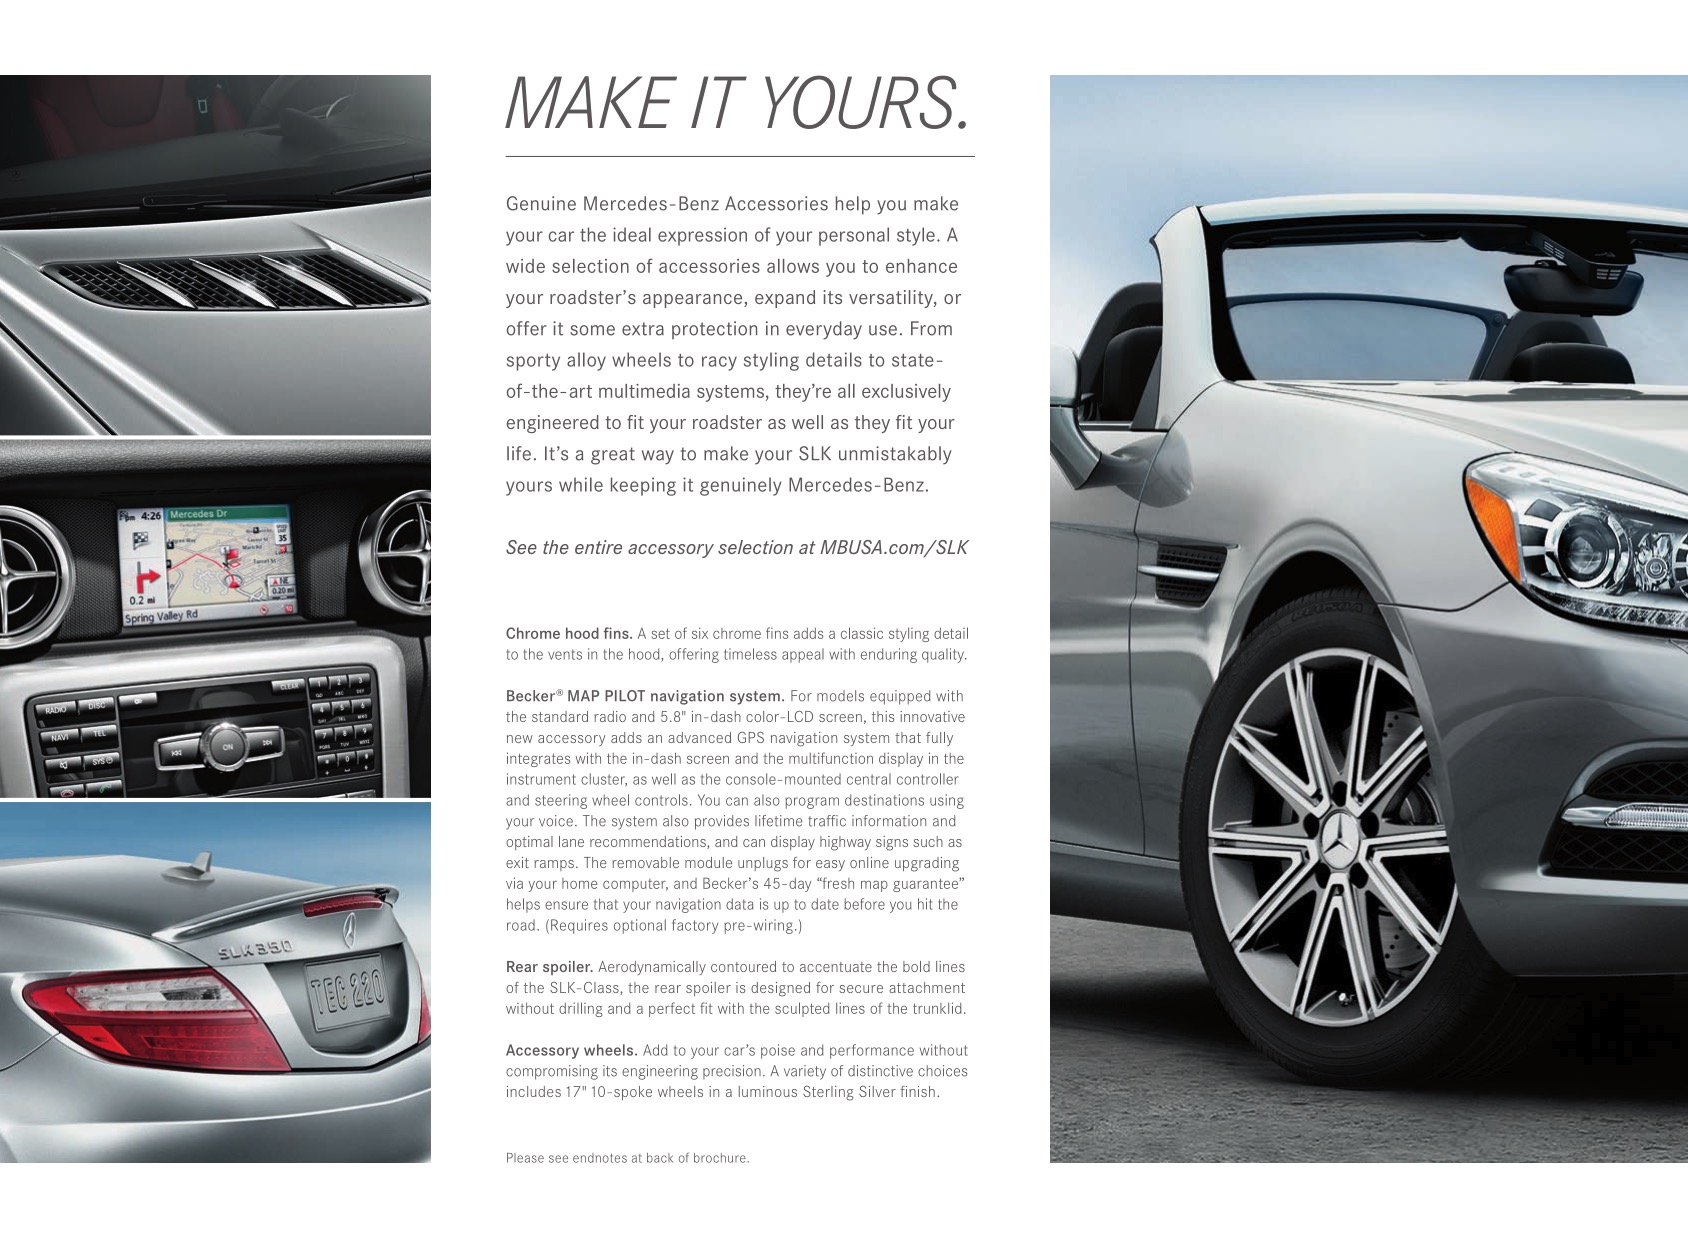 2013 Mercedes-Benz SLK Brochure Page 1